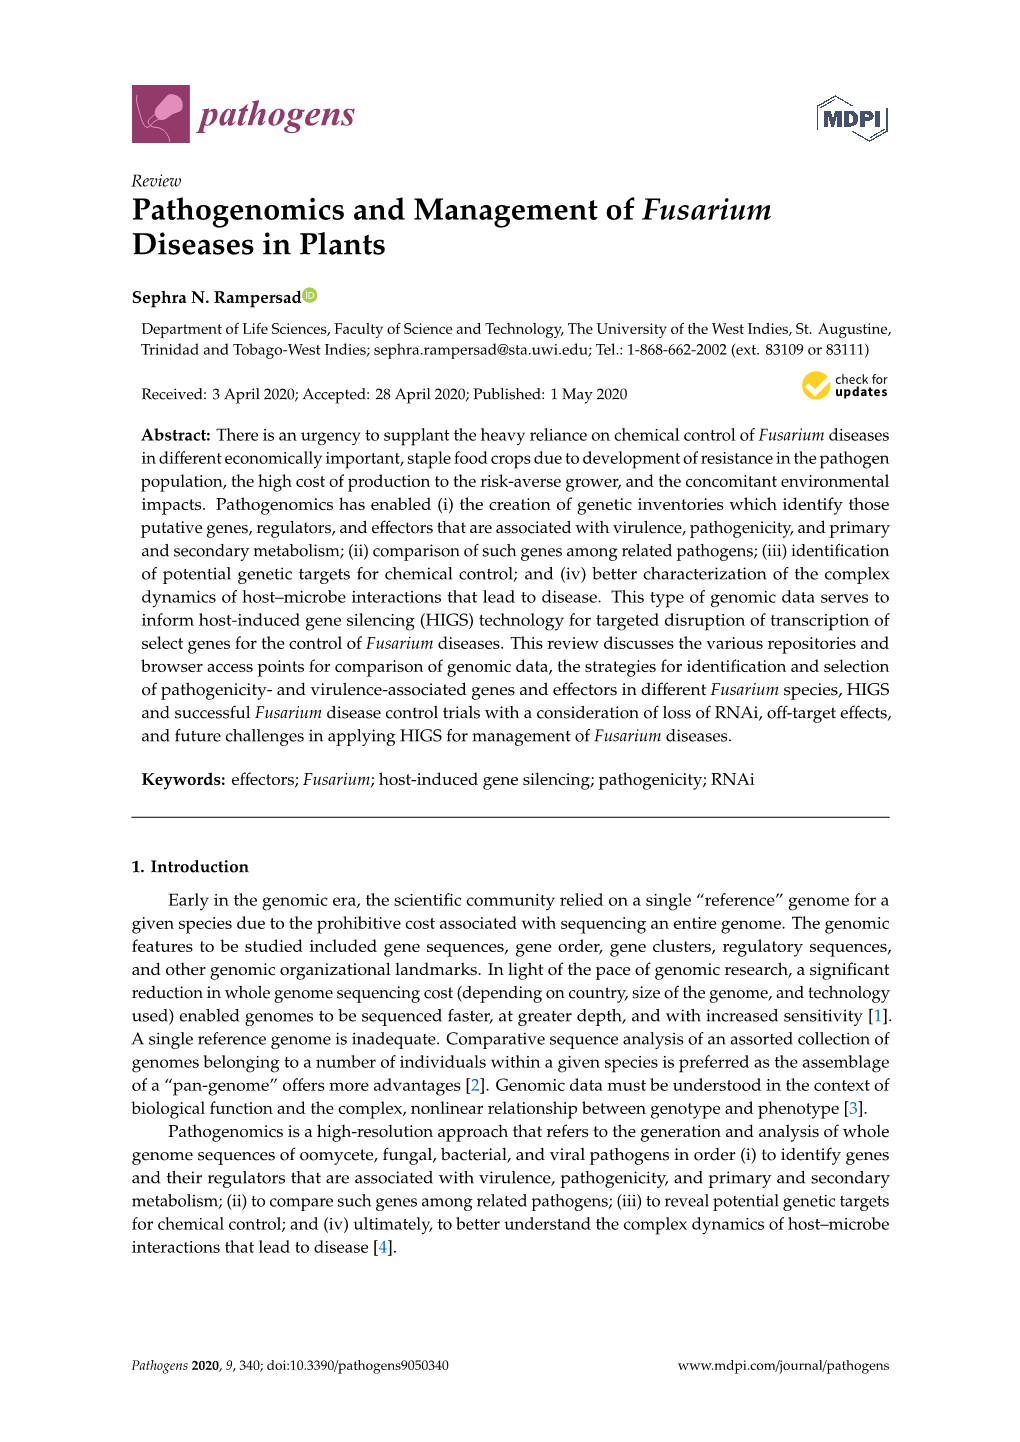 Pathogenomics and Management of Fusarium Diseases in Plants